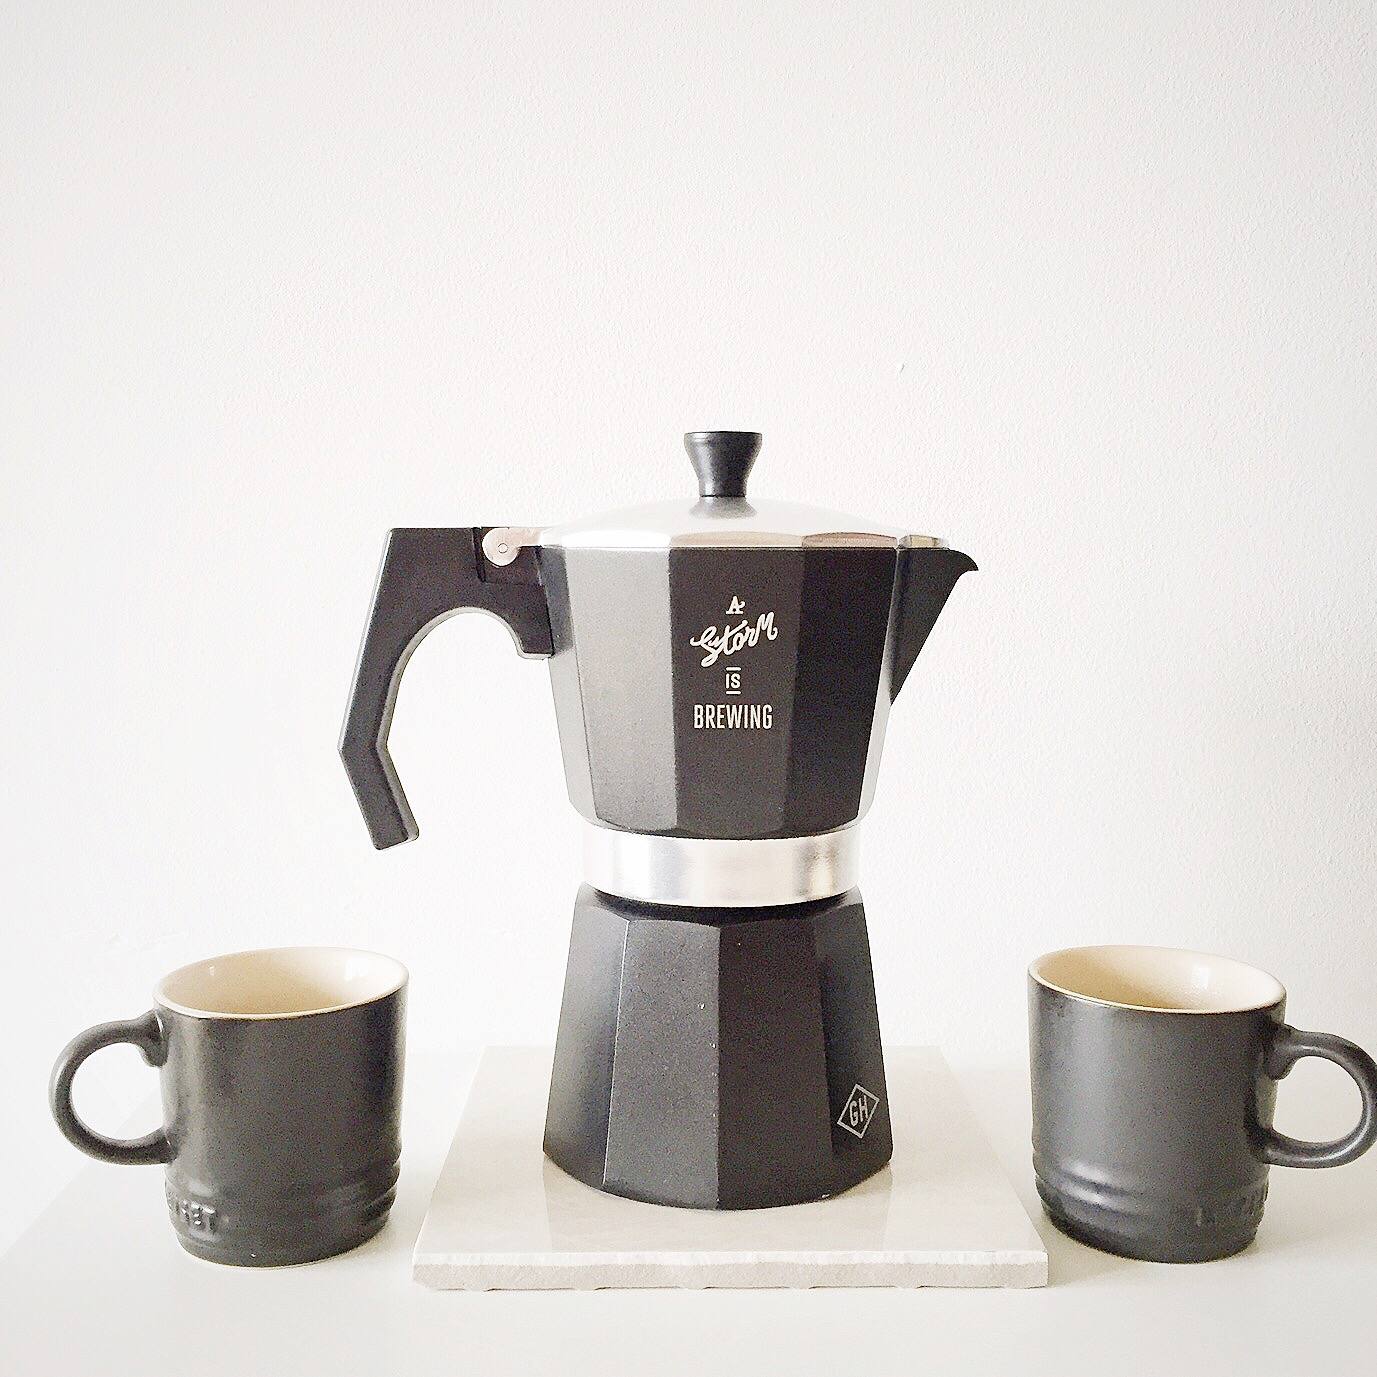 Stove top coffee espresso maker